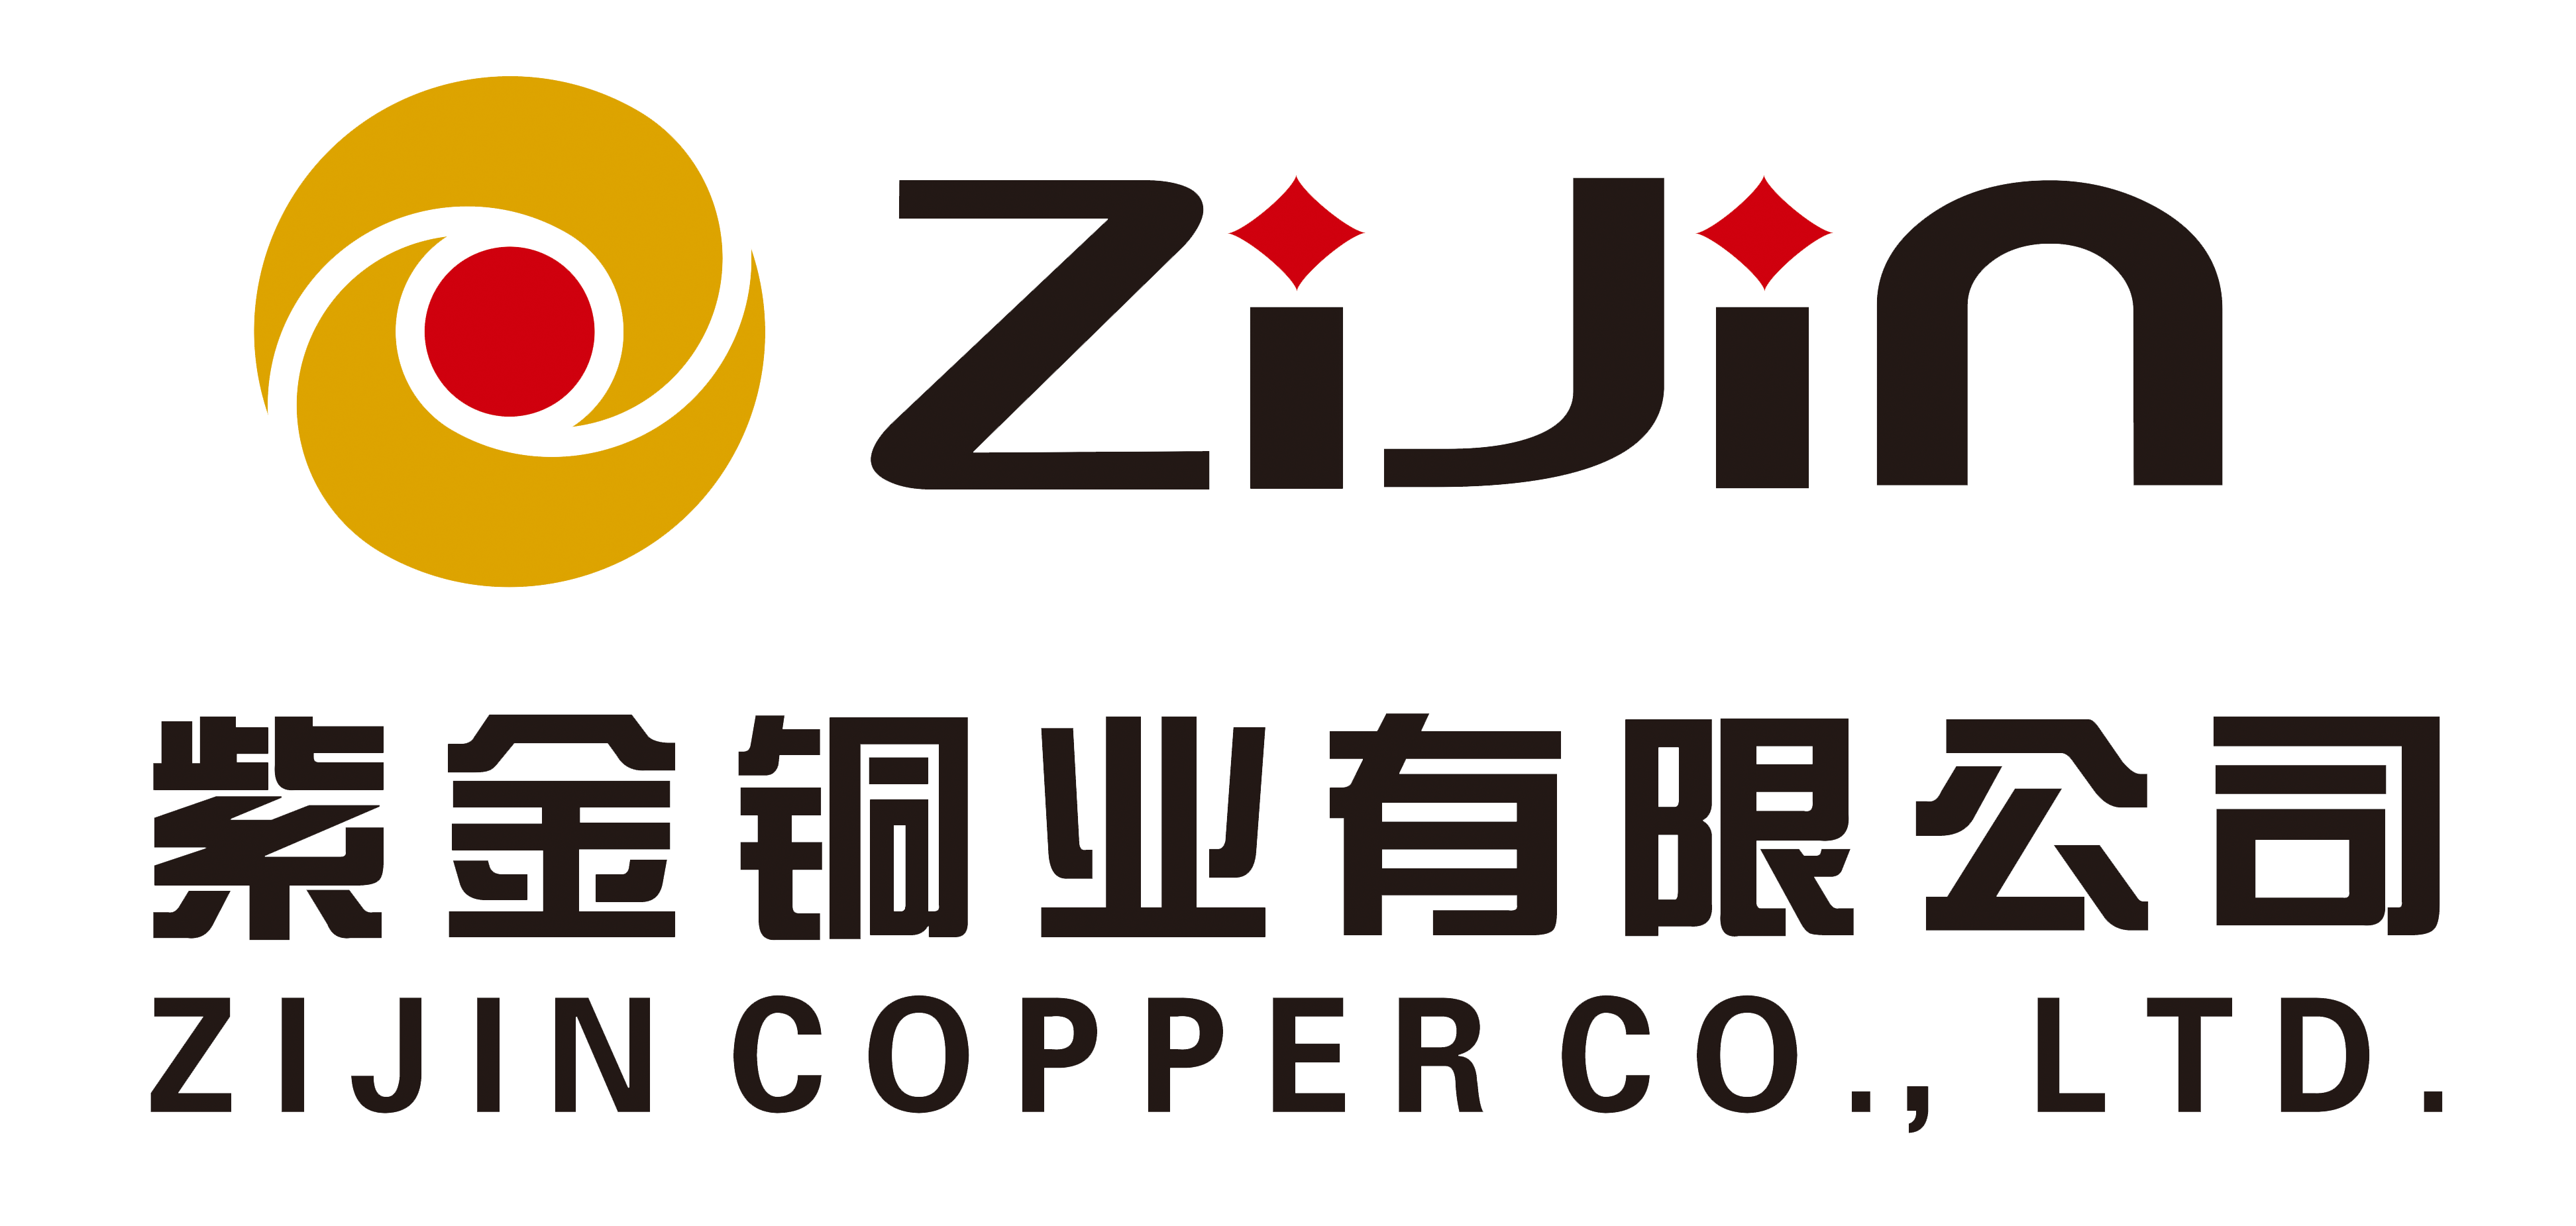 2018铜业logo2 png.png